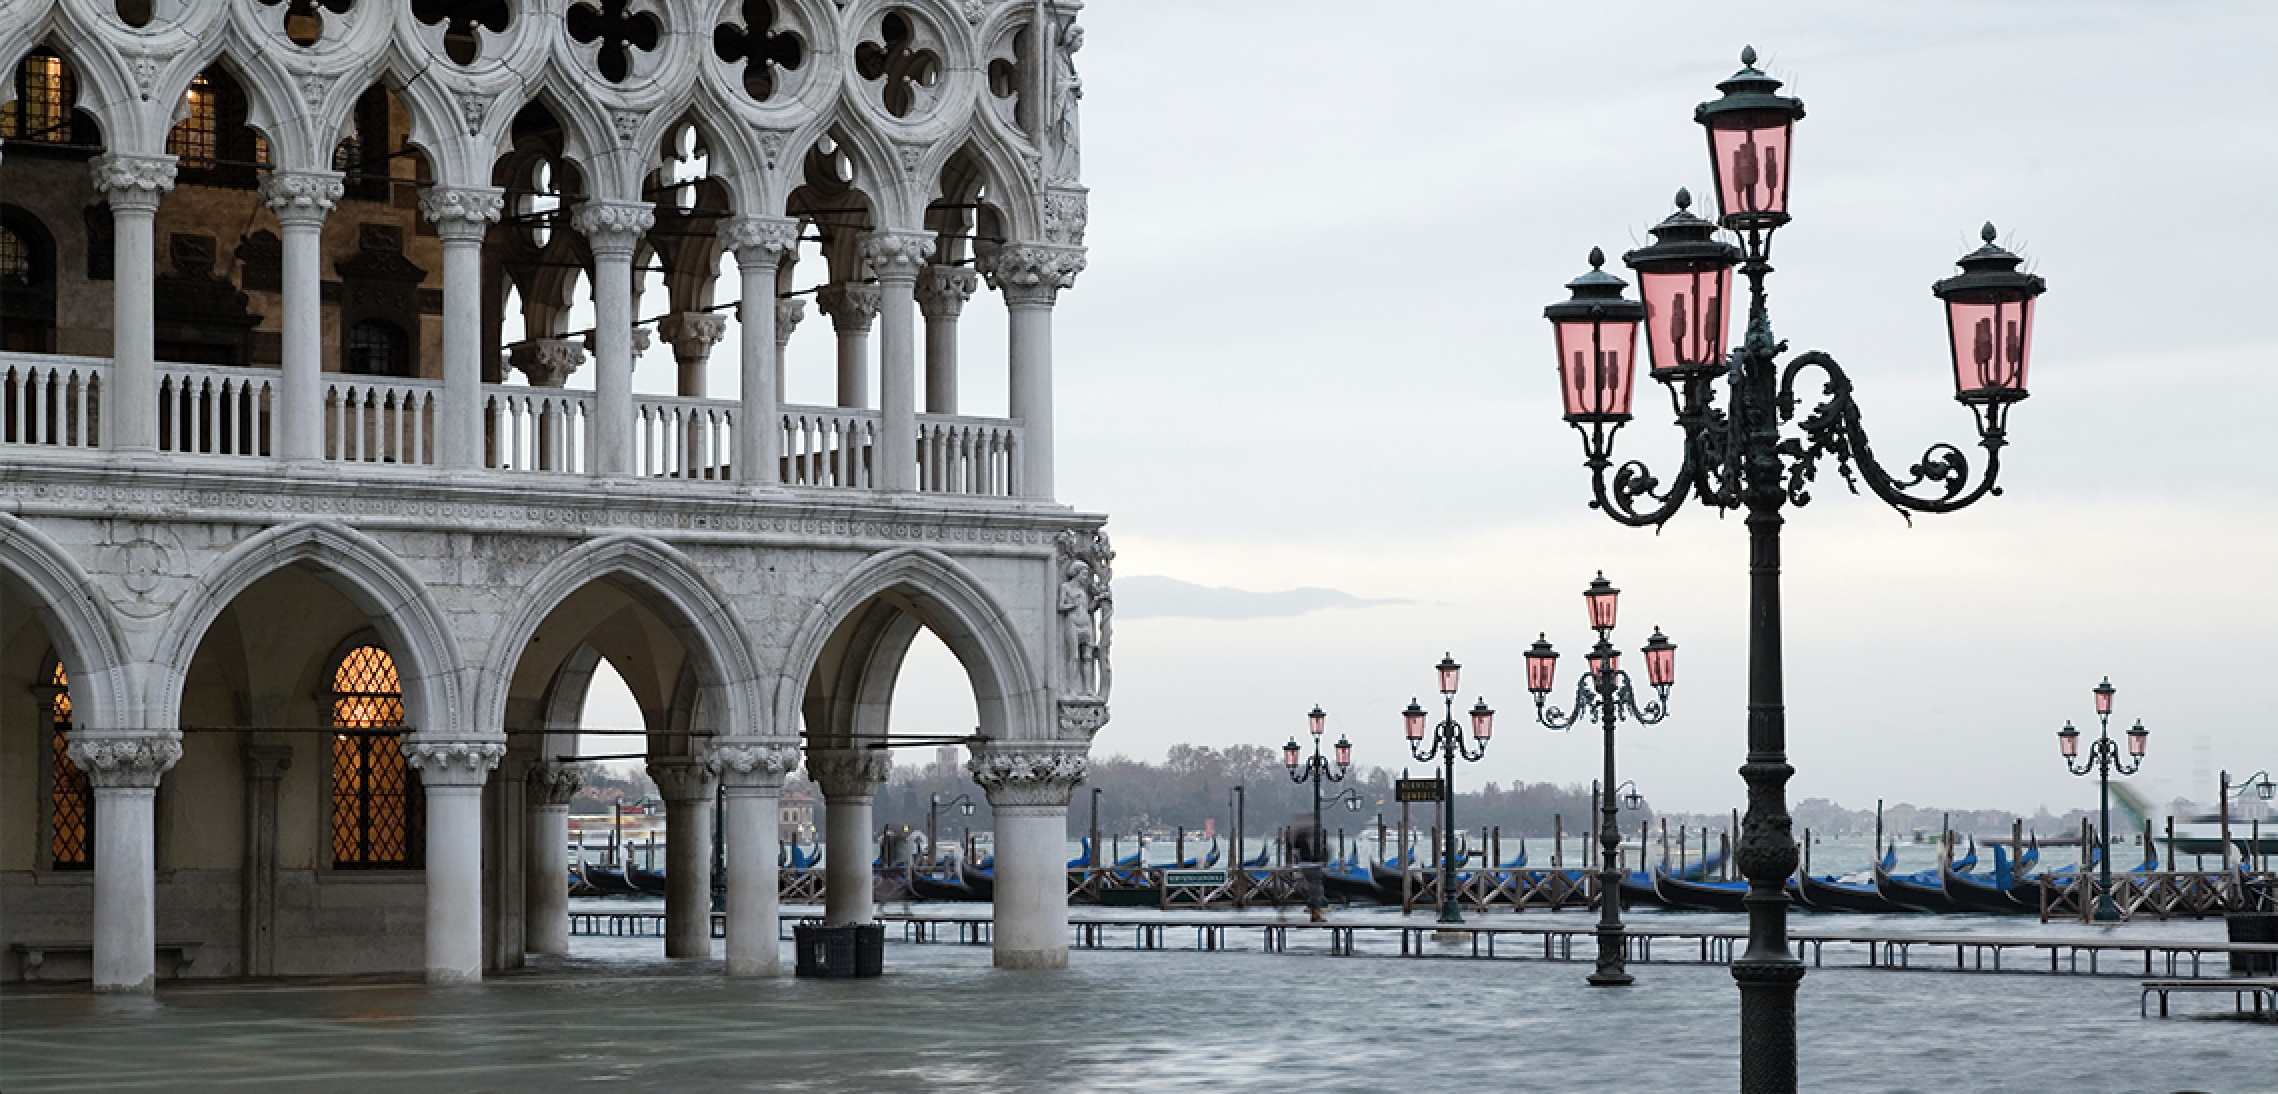 Venice, Italy flooding